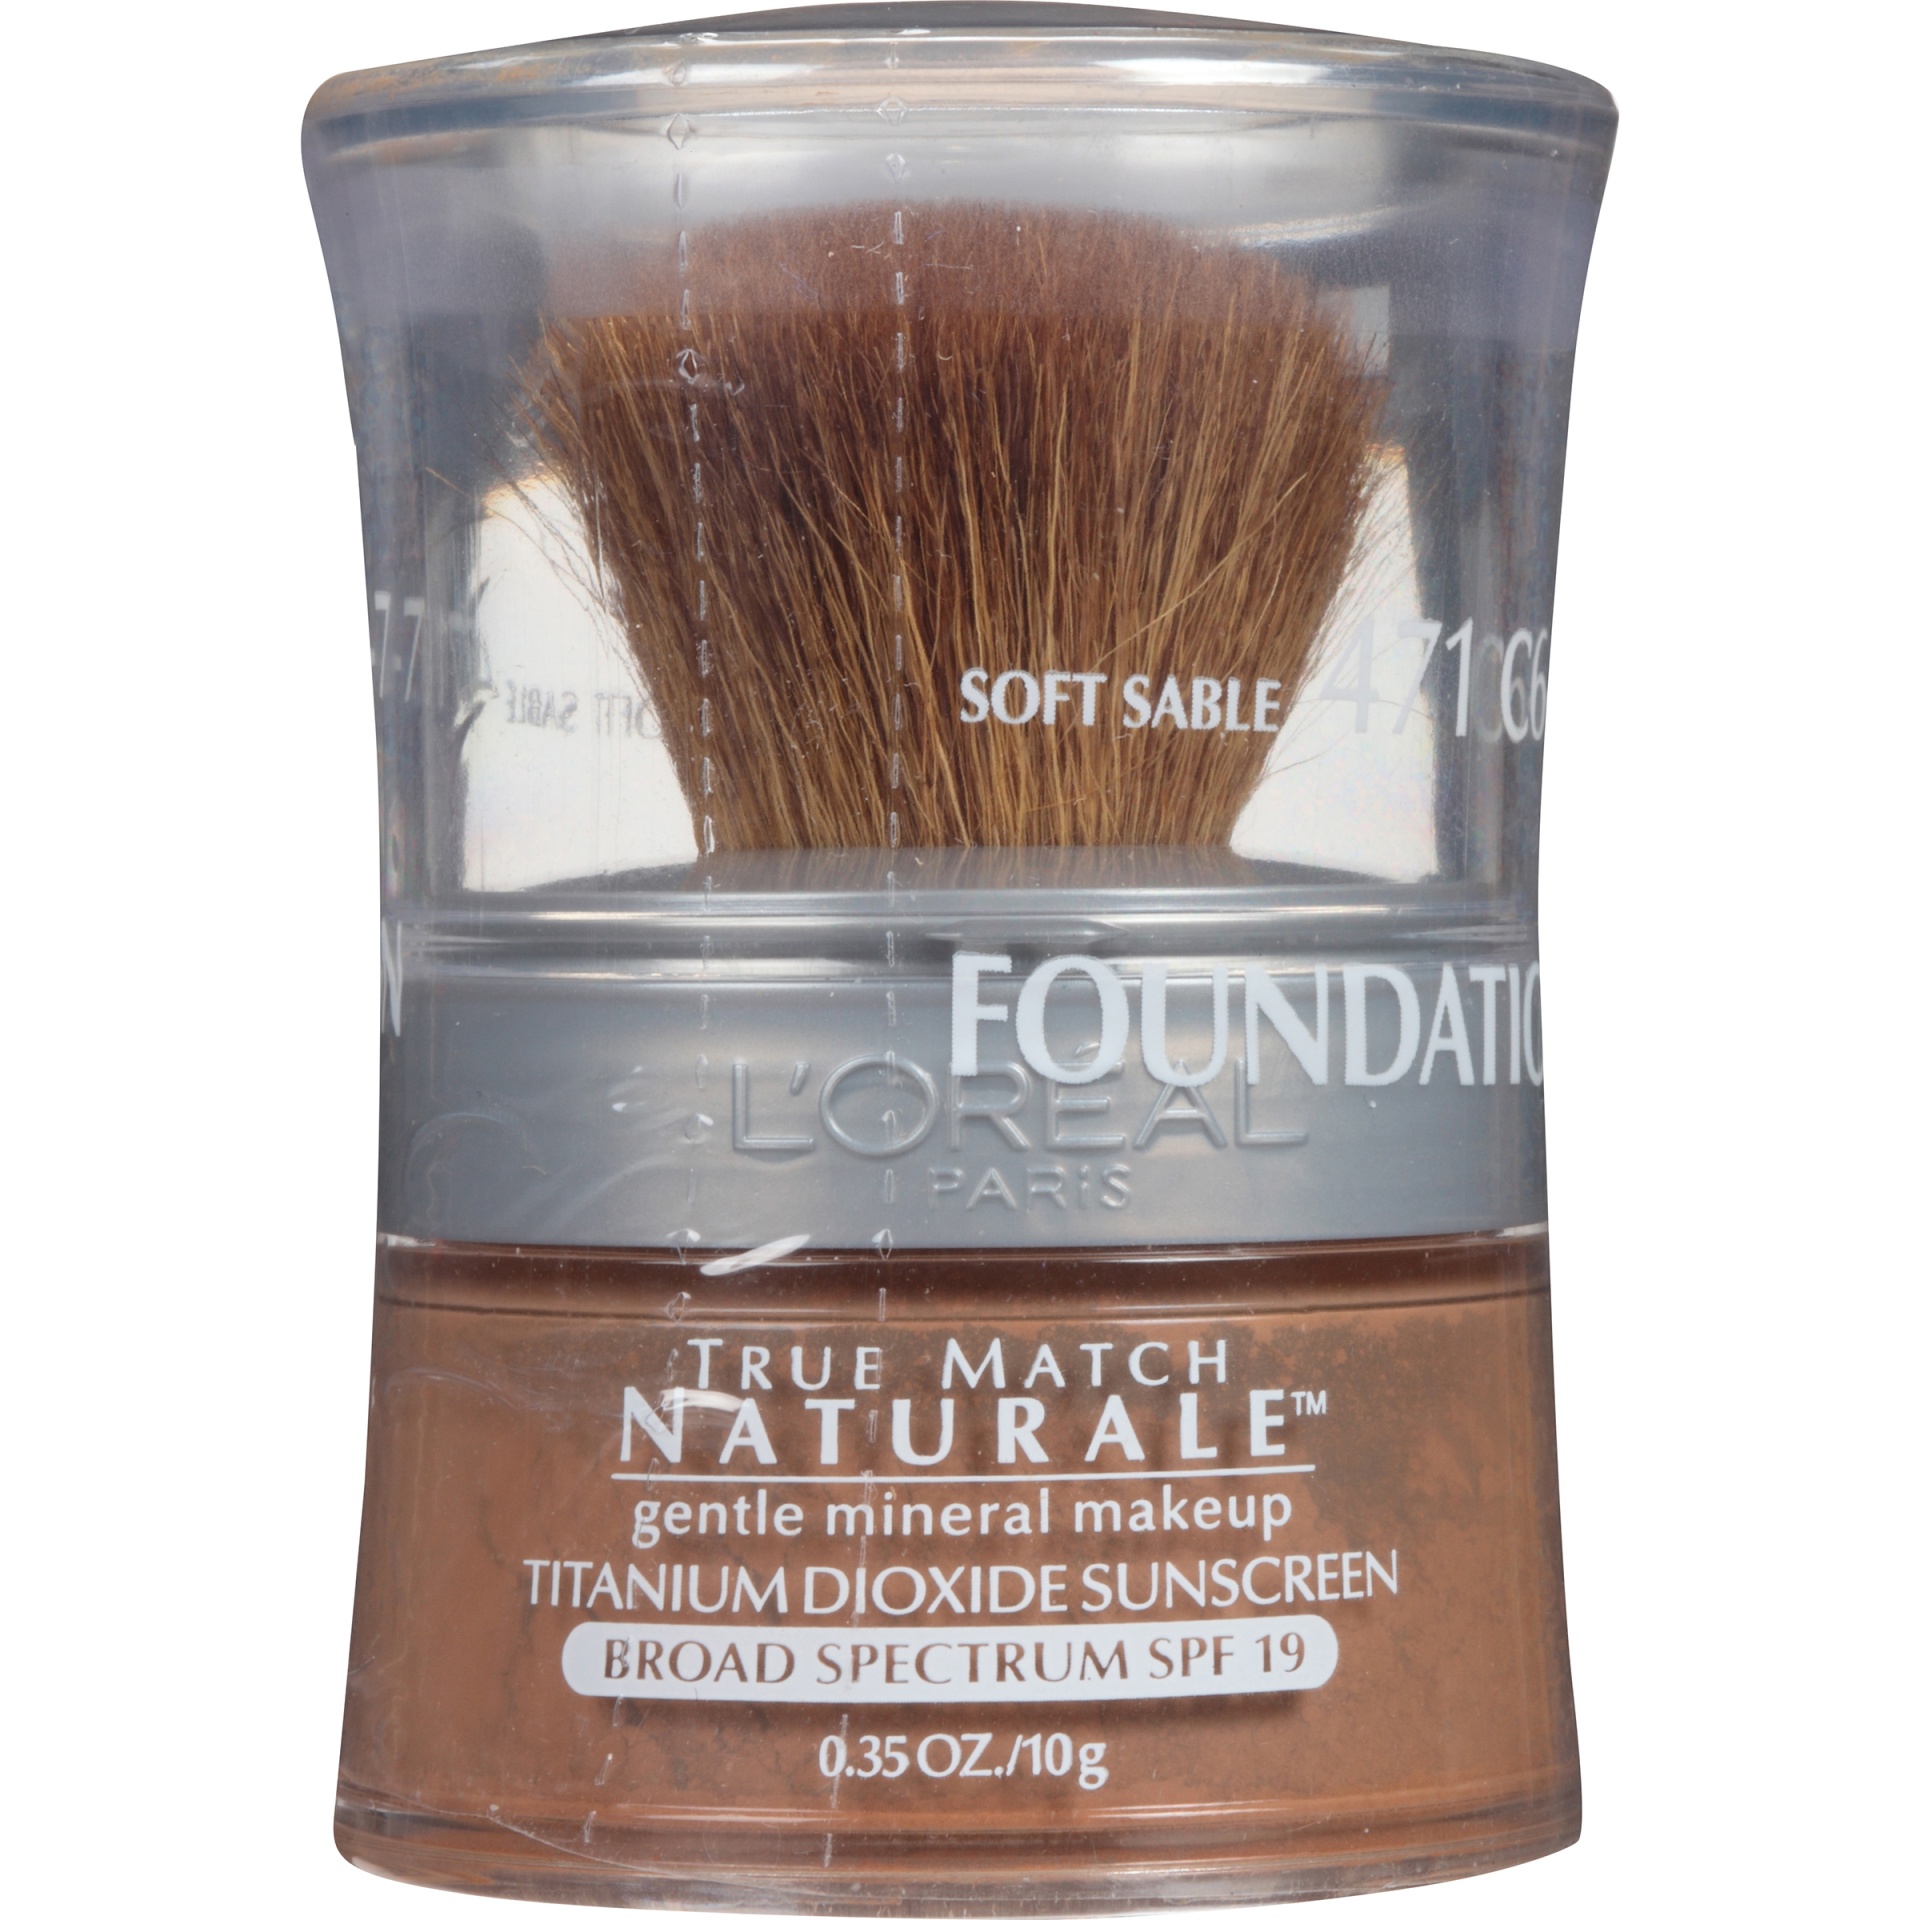 slide 4 of 5, L'Oréal Soft Sable True Match Naturale, 0.35 oz